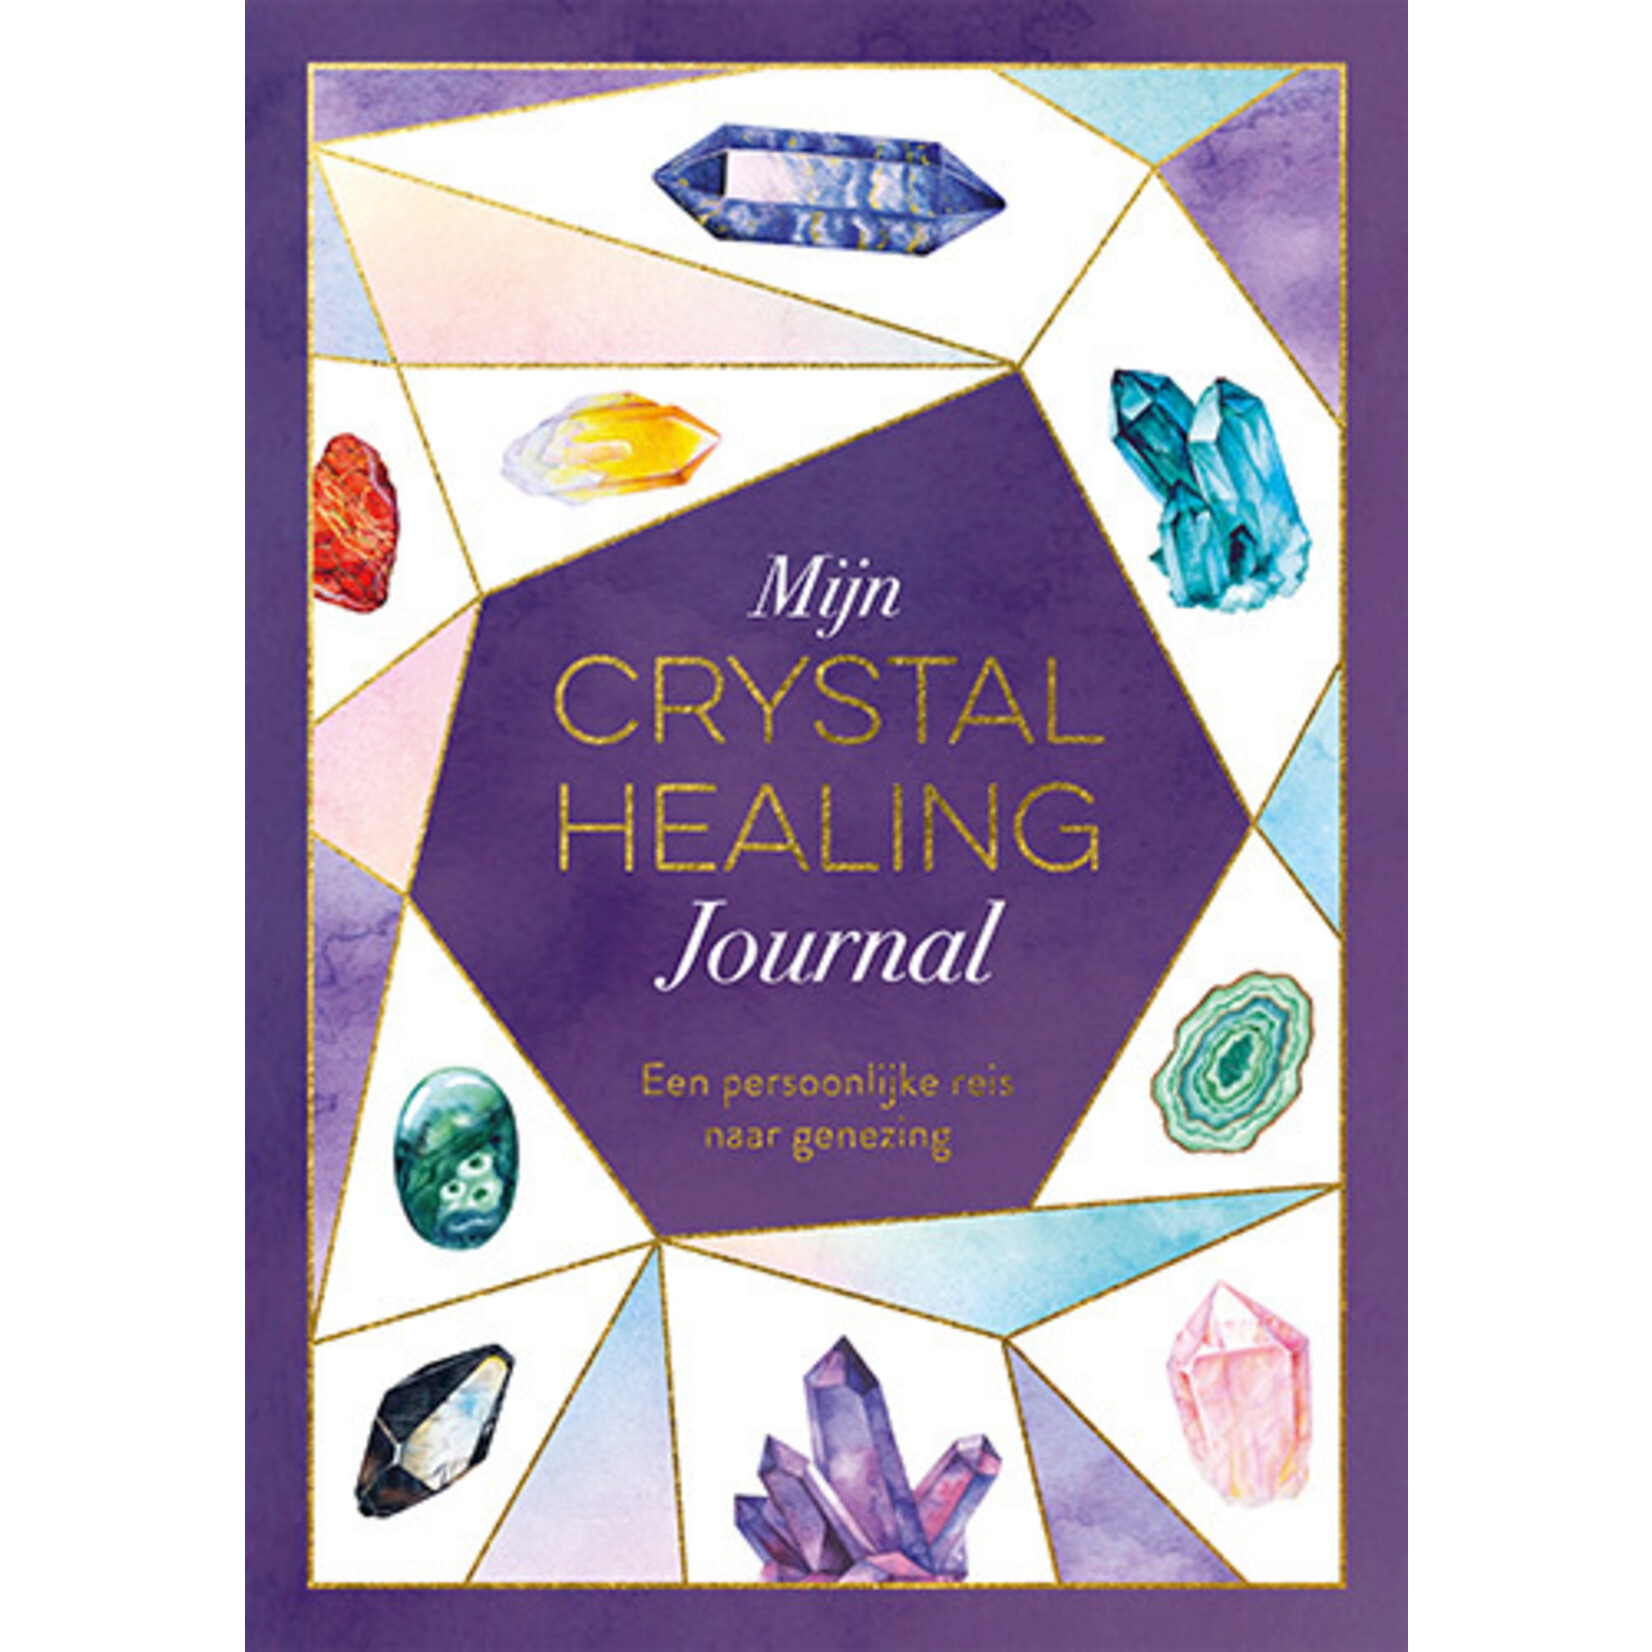 Mijn Crystal Healing Journal, een persoonlijke reis naar genezing